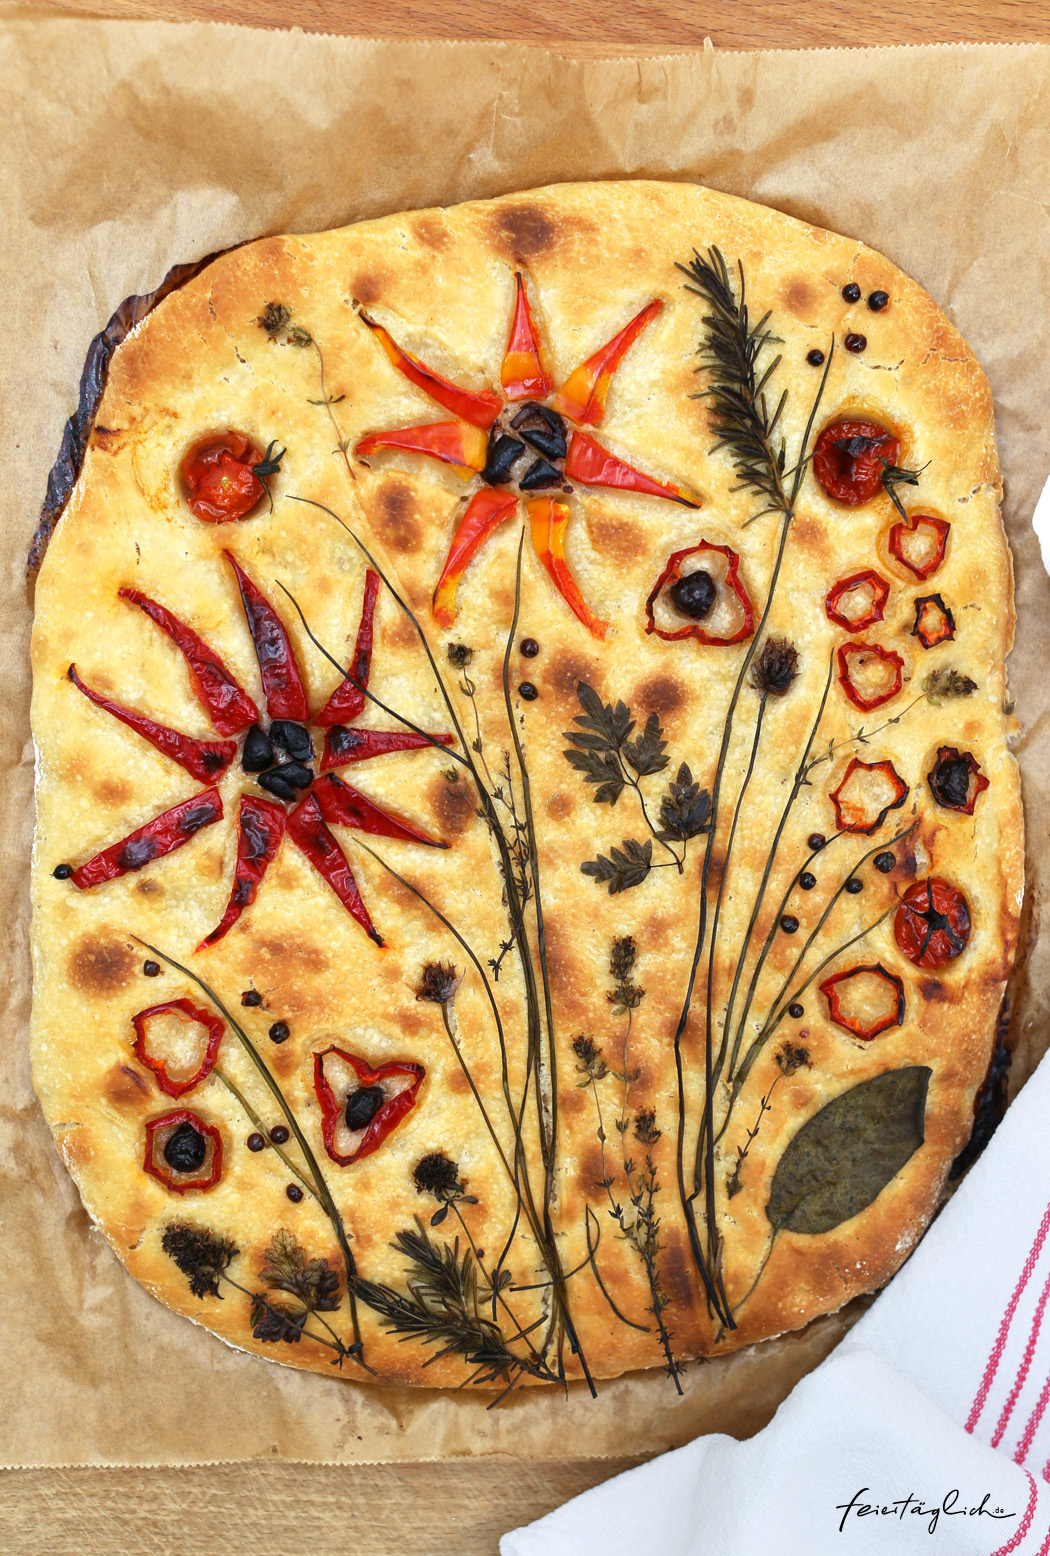 Focaccia mit Blumen, der Foodtrend #focacciagarden – ein Rezept für eine fabelhafte Focaccia mit Sauerteig